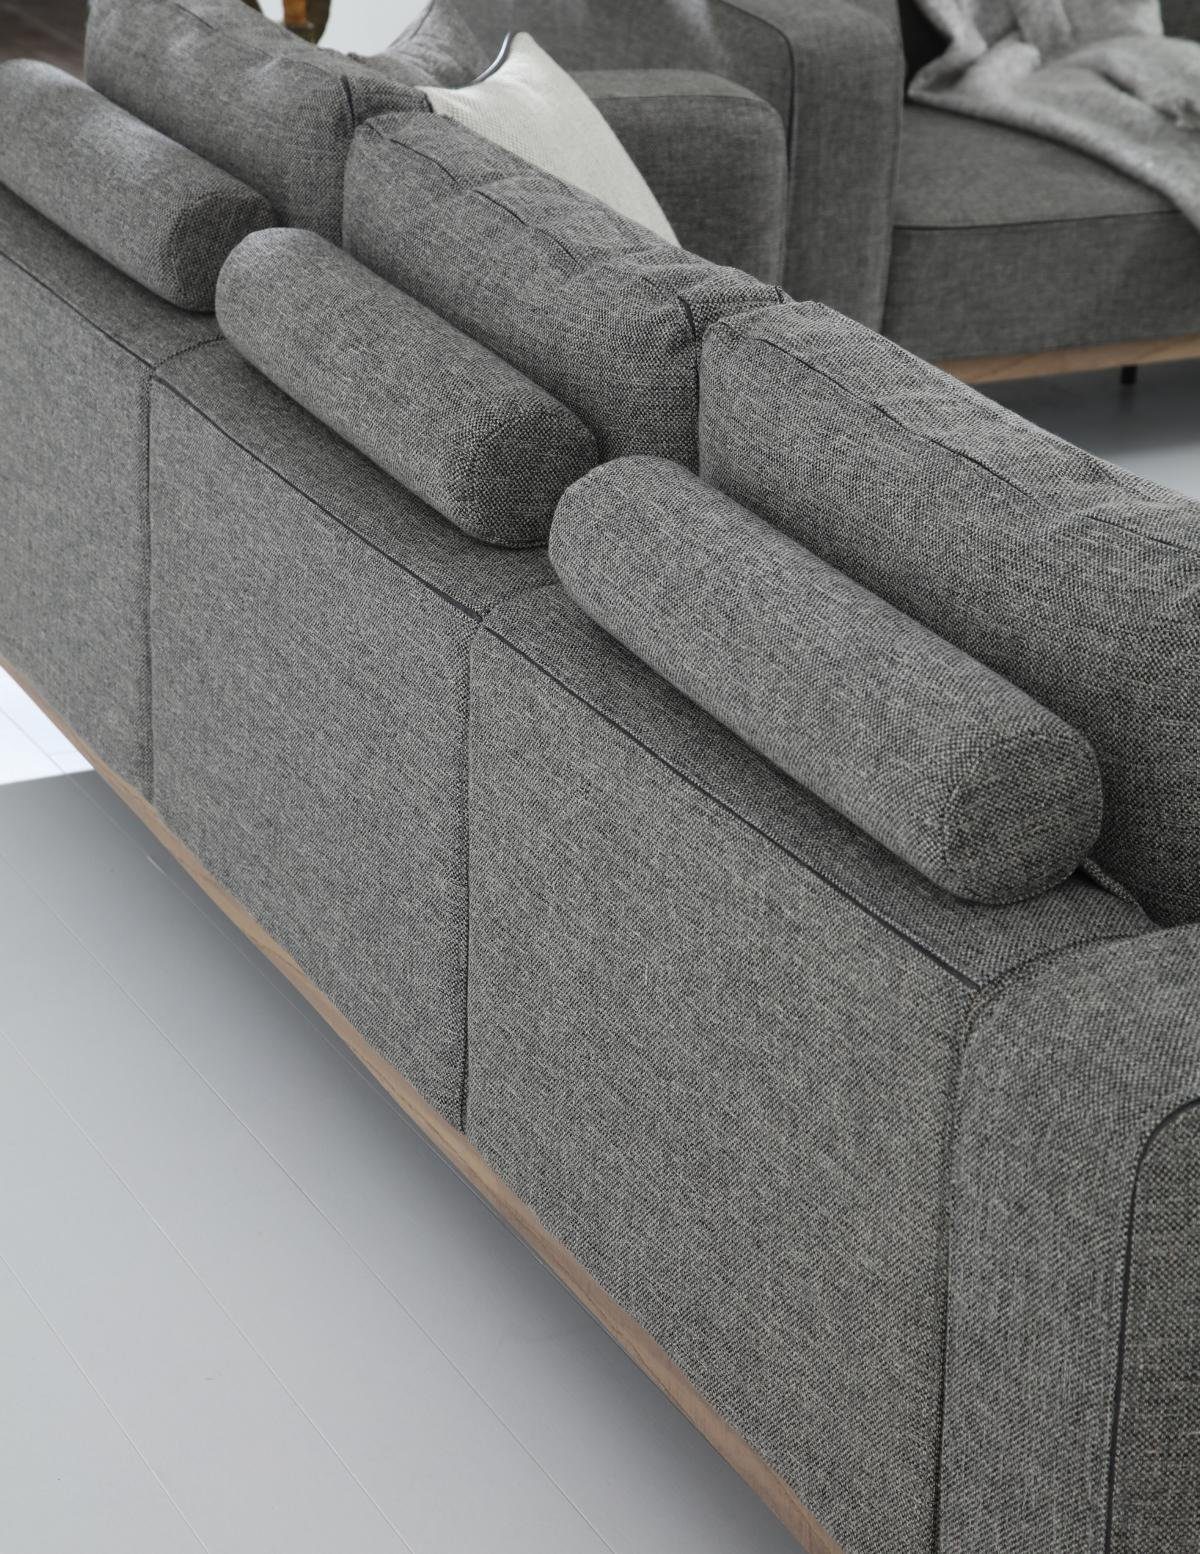 JVmoebel 3-Sitzer Zweisitzer Sofa 2 Grau, Teile, Design Modern Wohnzimmer Sitzer 1 Europa Sofas Stoff Made in